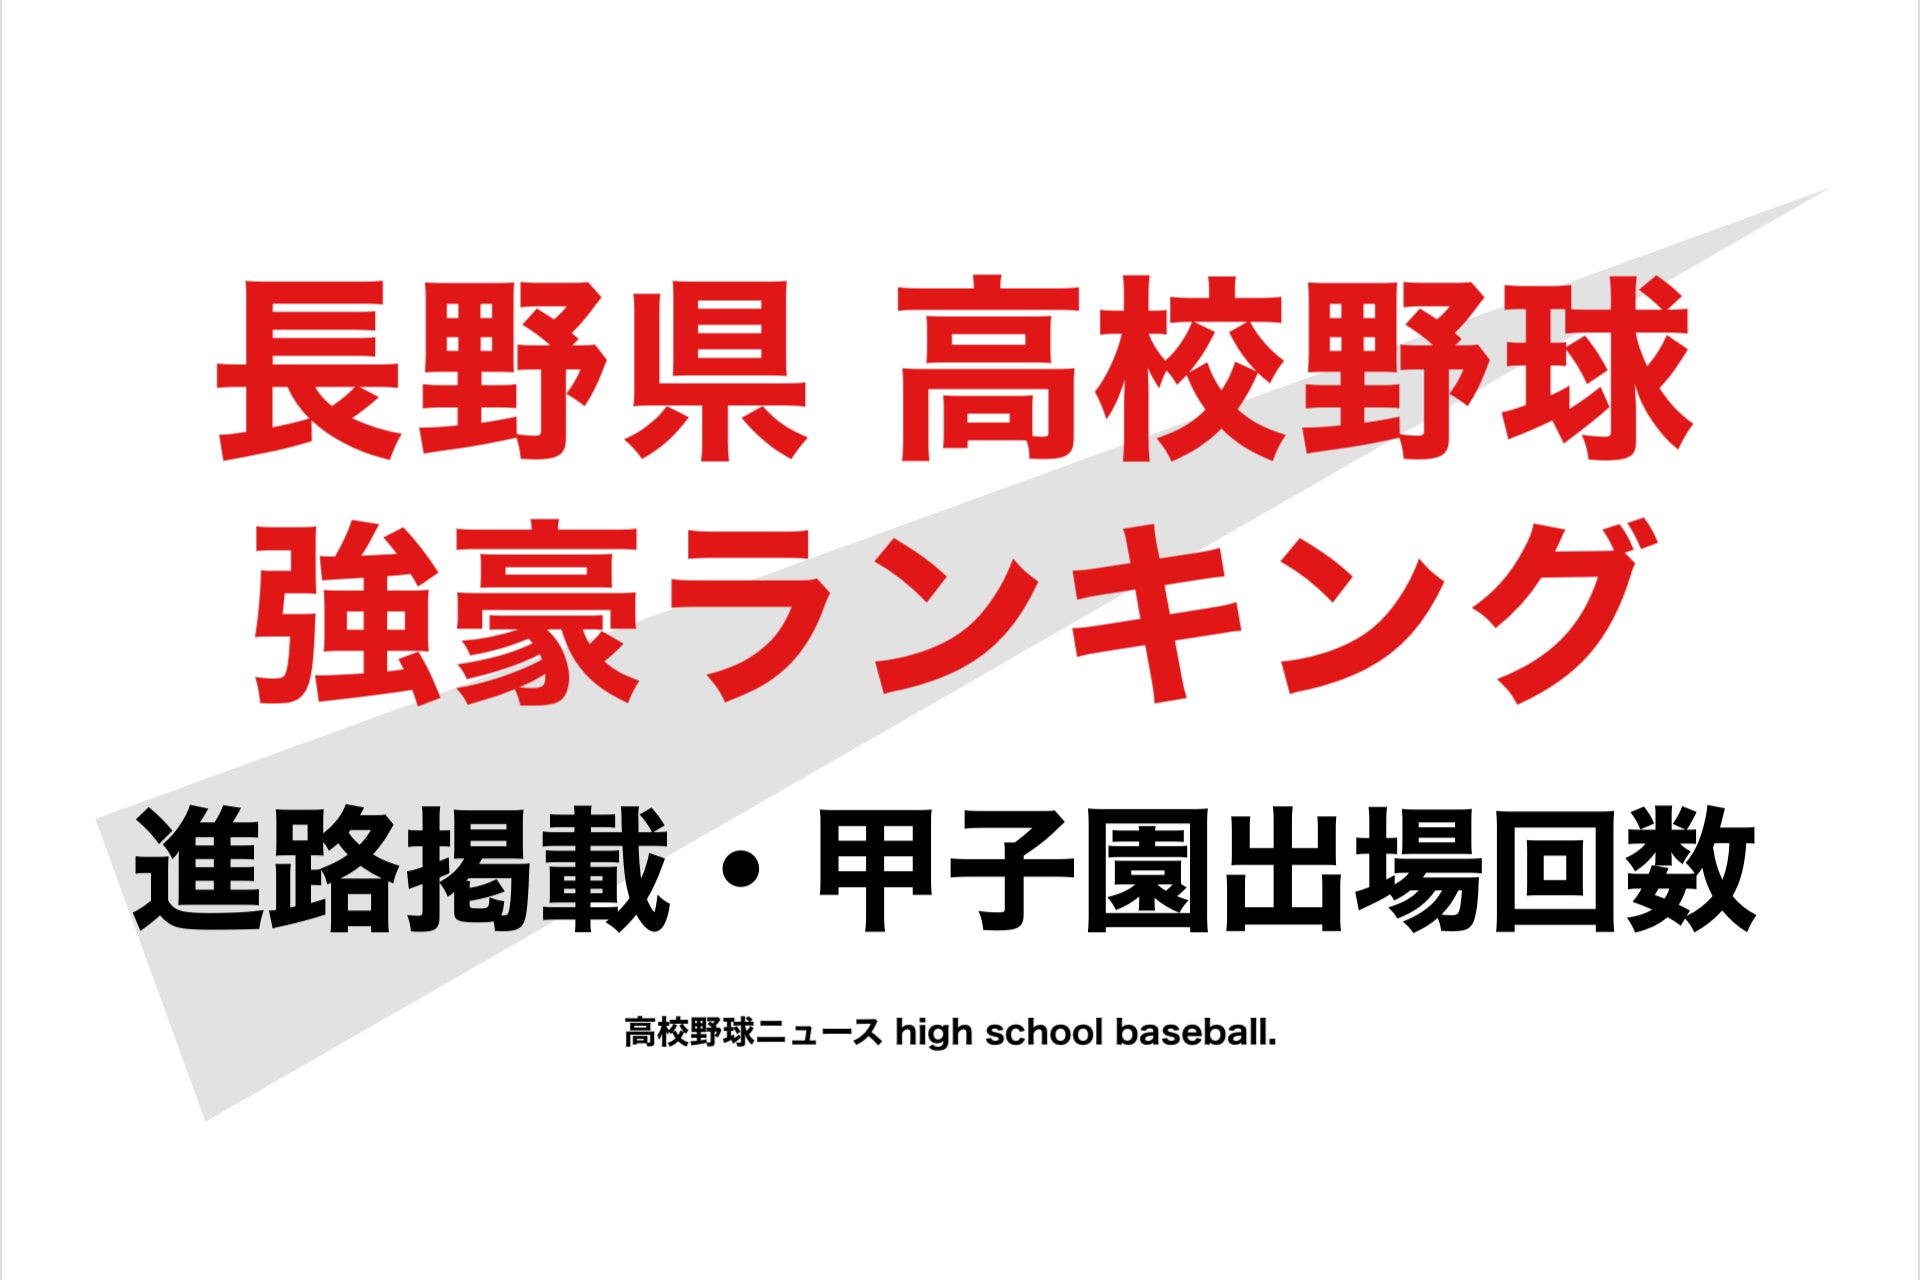 野球 長野 県 結果 高校 部員12人で挑む夏 3年ぶり「単独チーム」で出場